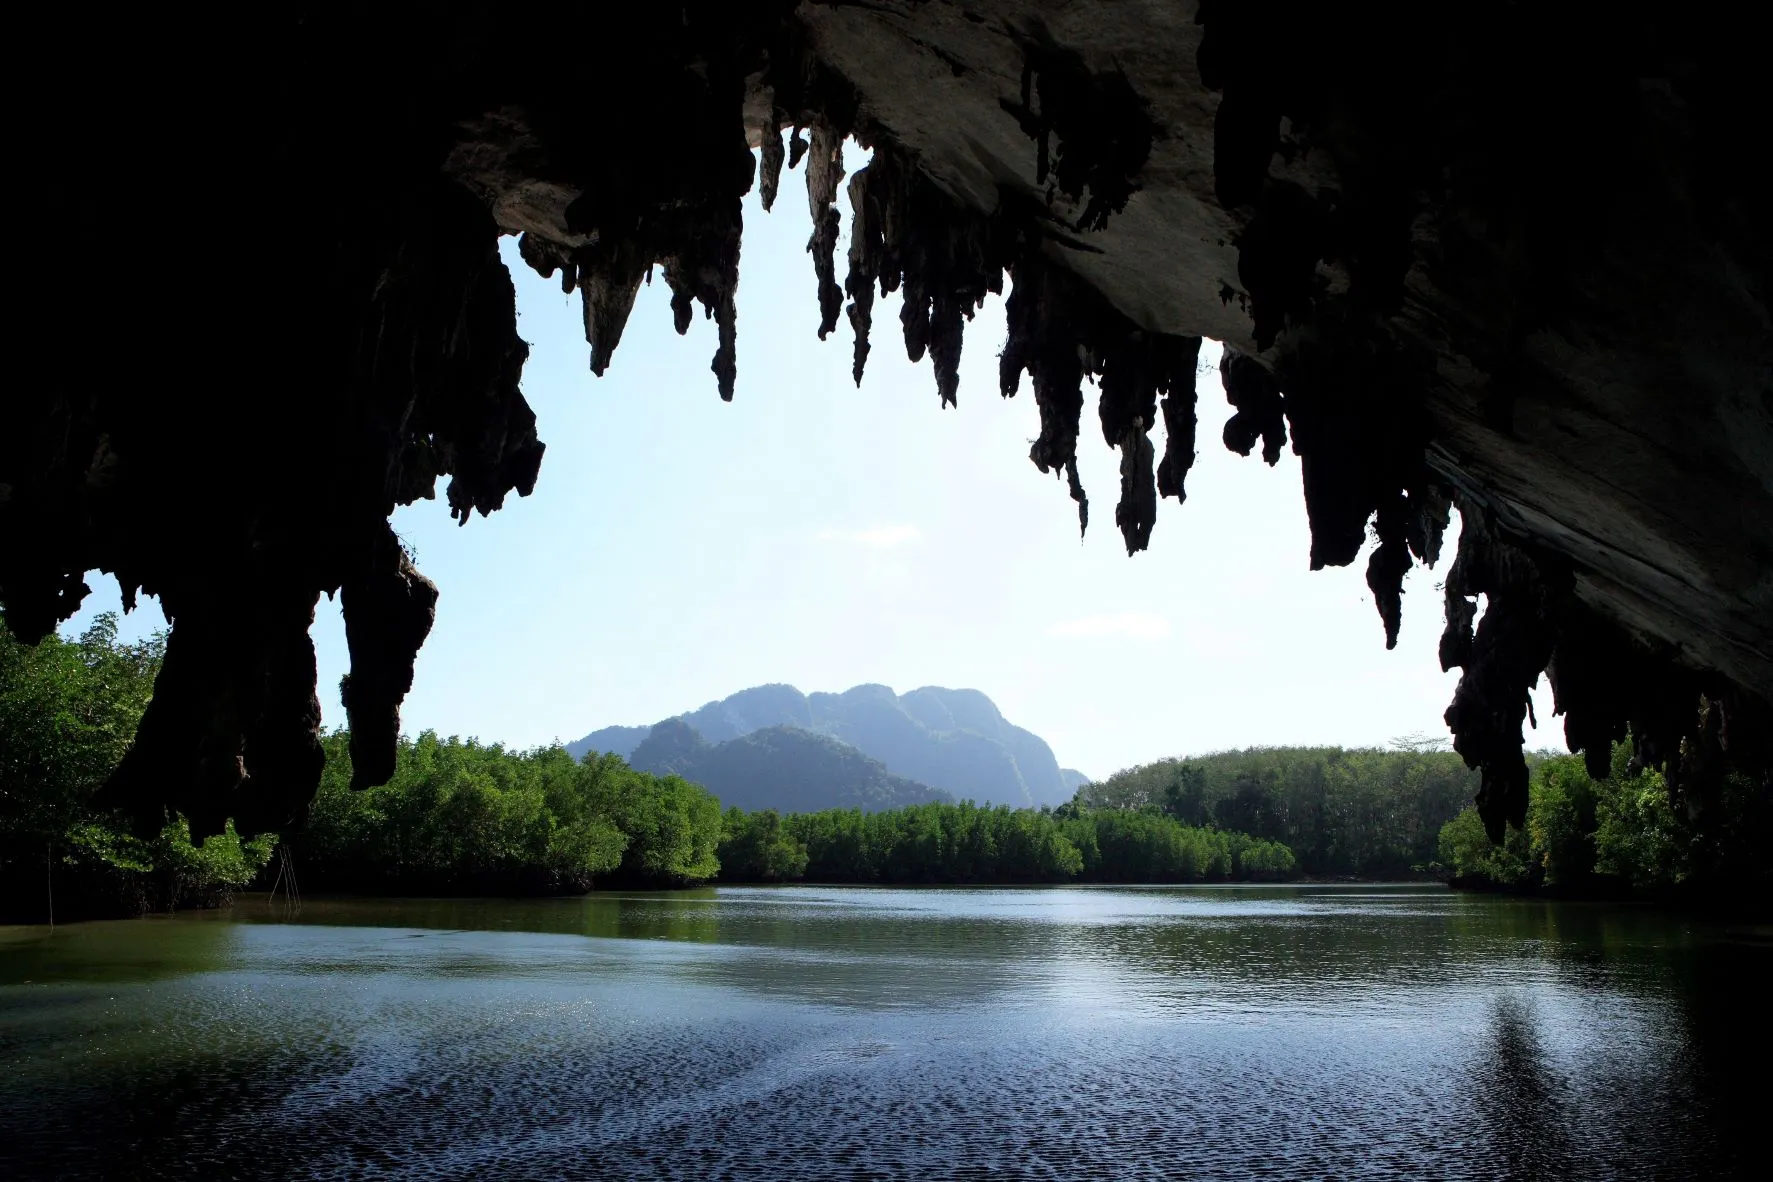 ตำบลโคกกลอย : ถ้ำลอด (Source: การท่องเที่ยวแห่งประเทศไทย)